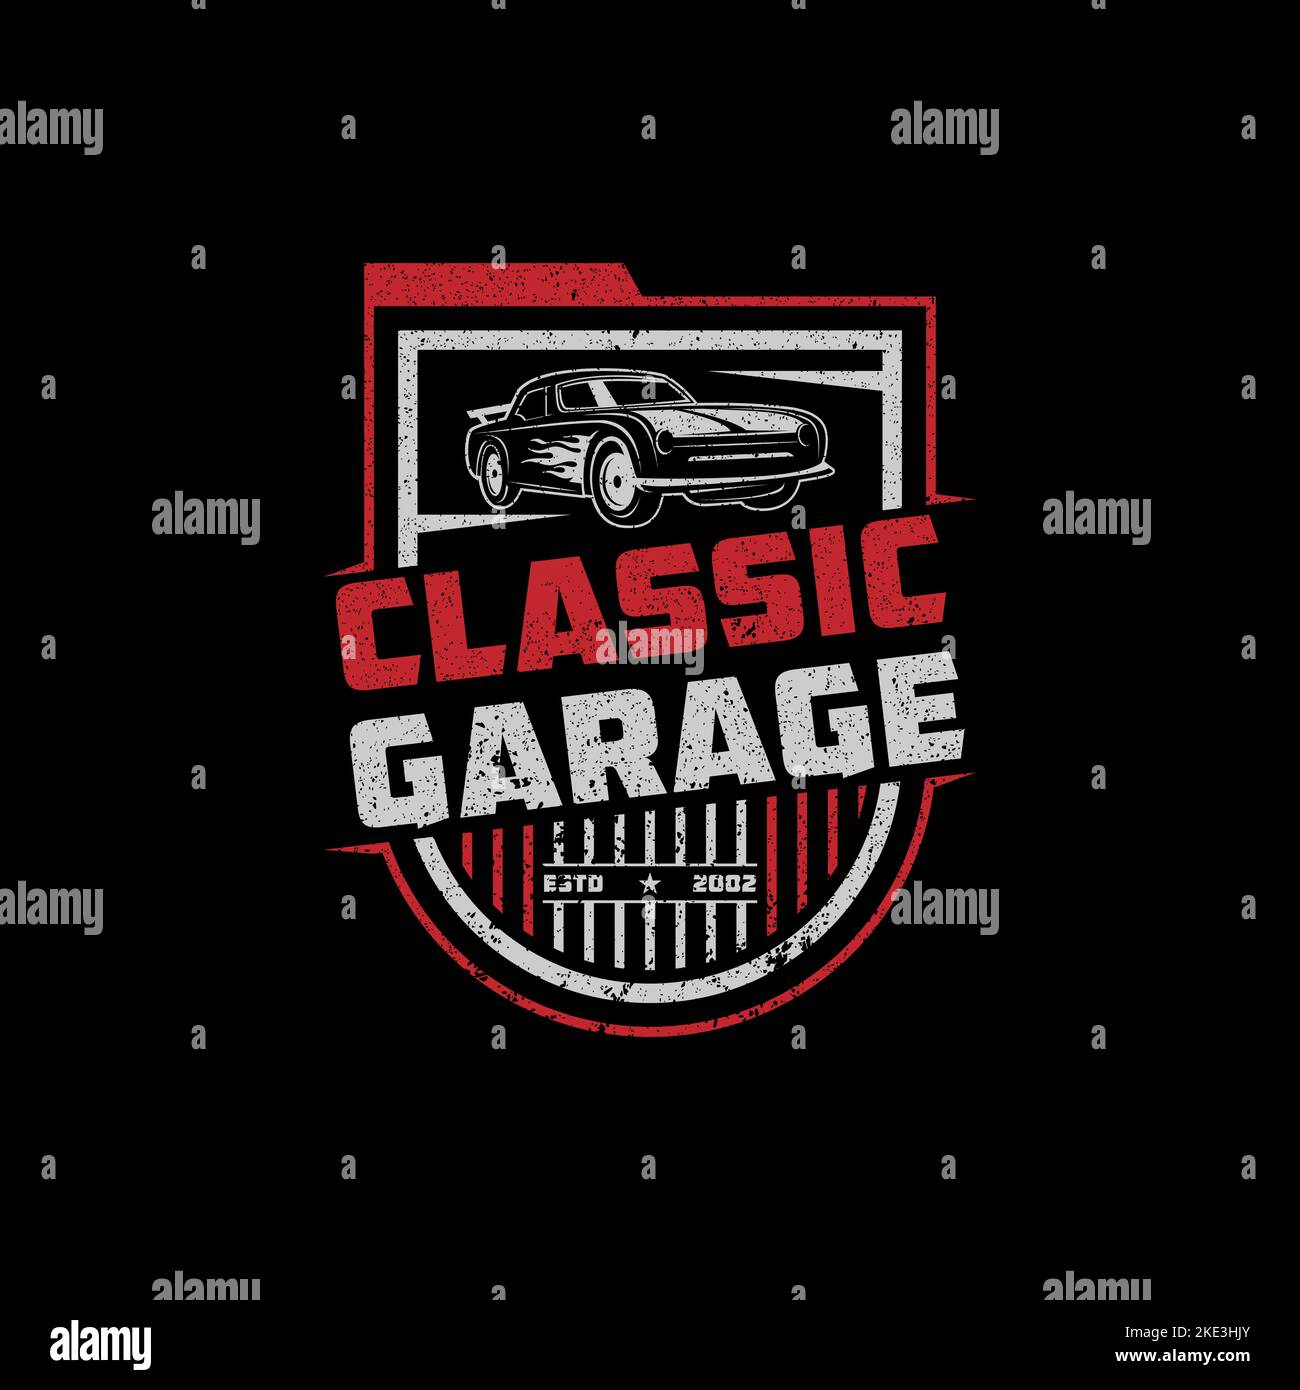 Automotive Auto Classic Car Garage Logo vettore, riparazione e modifica modello di logo auto con stile rustico, vintage, retrò Illustrazione Vettoriale